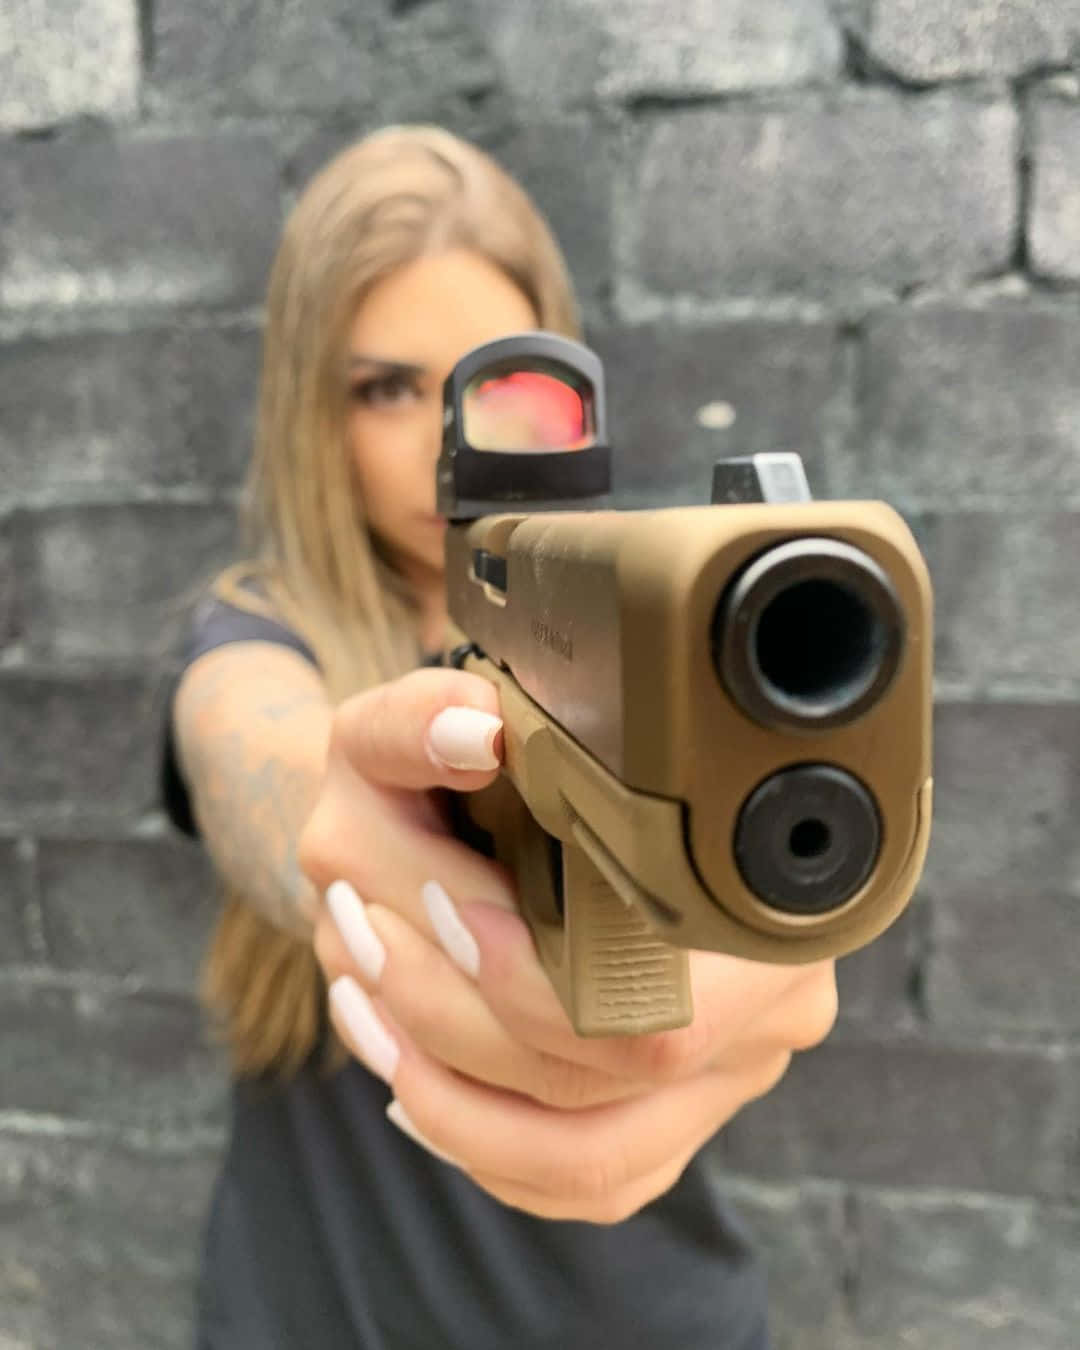 Imagende Una Chica Apuntando Una Pistola